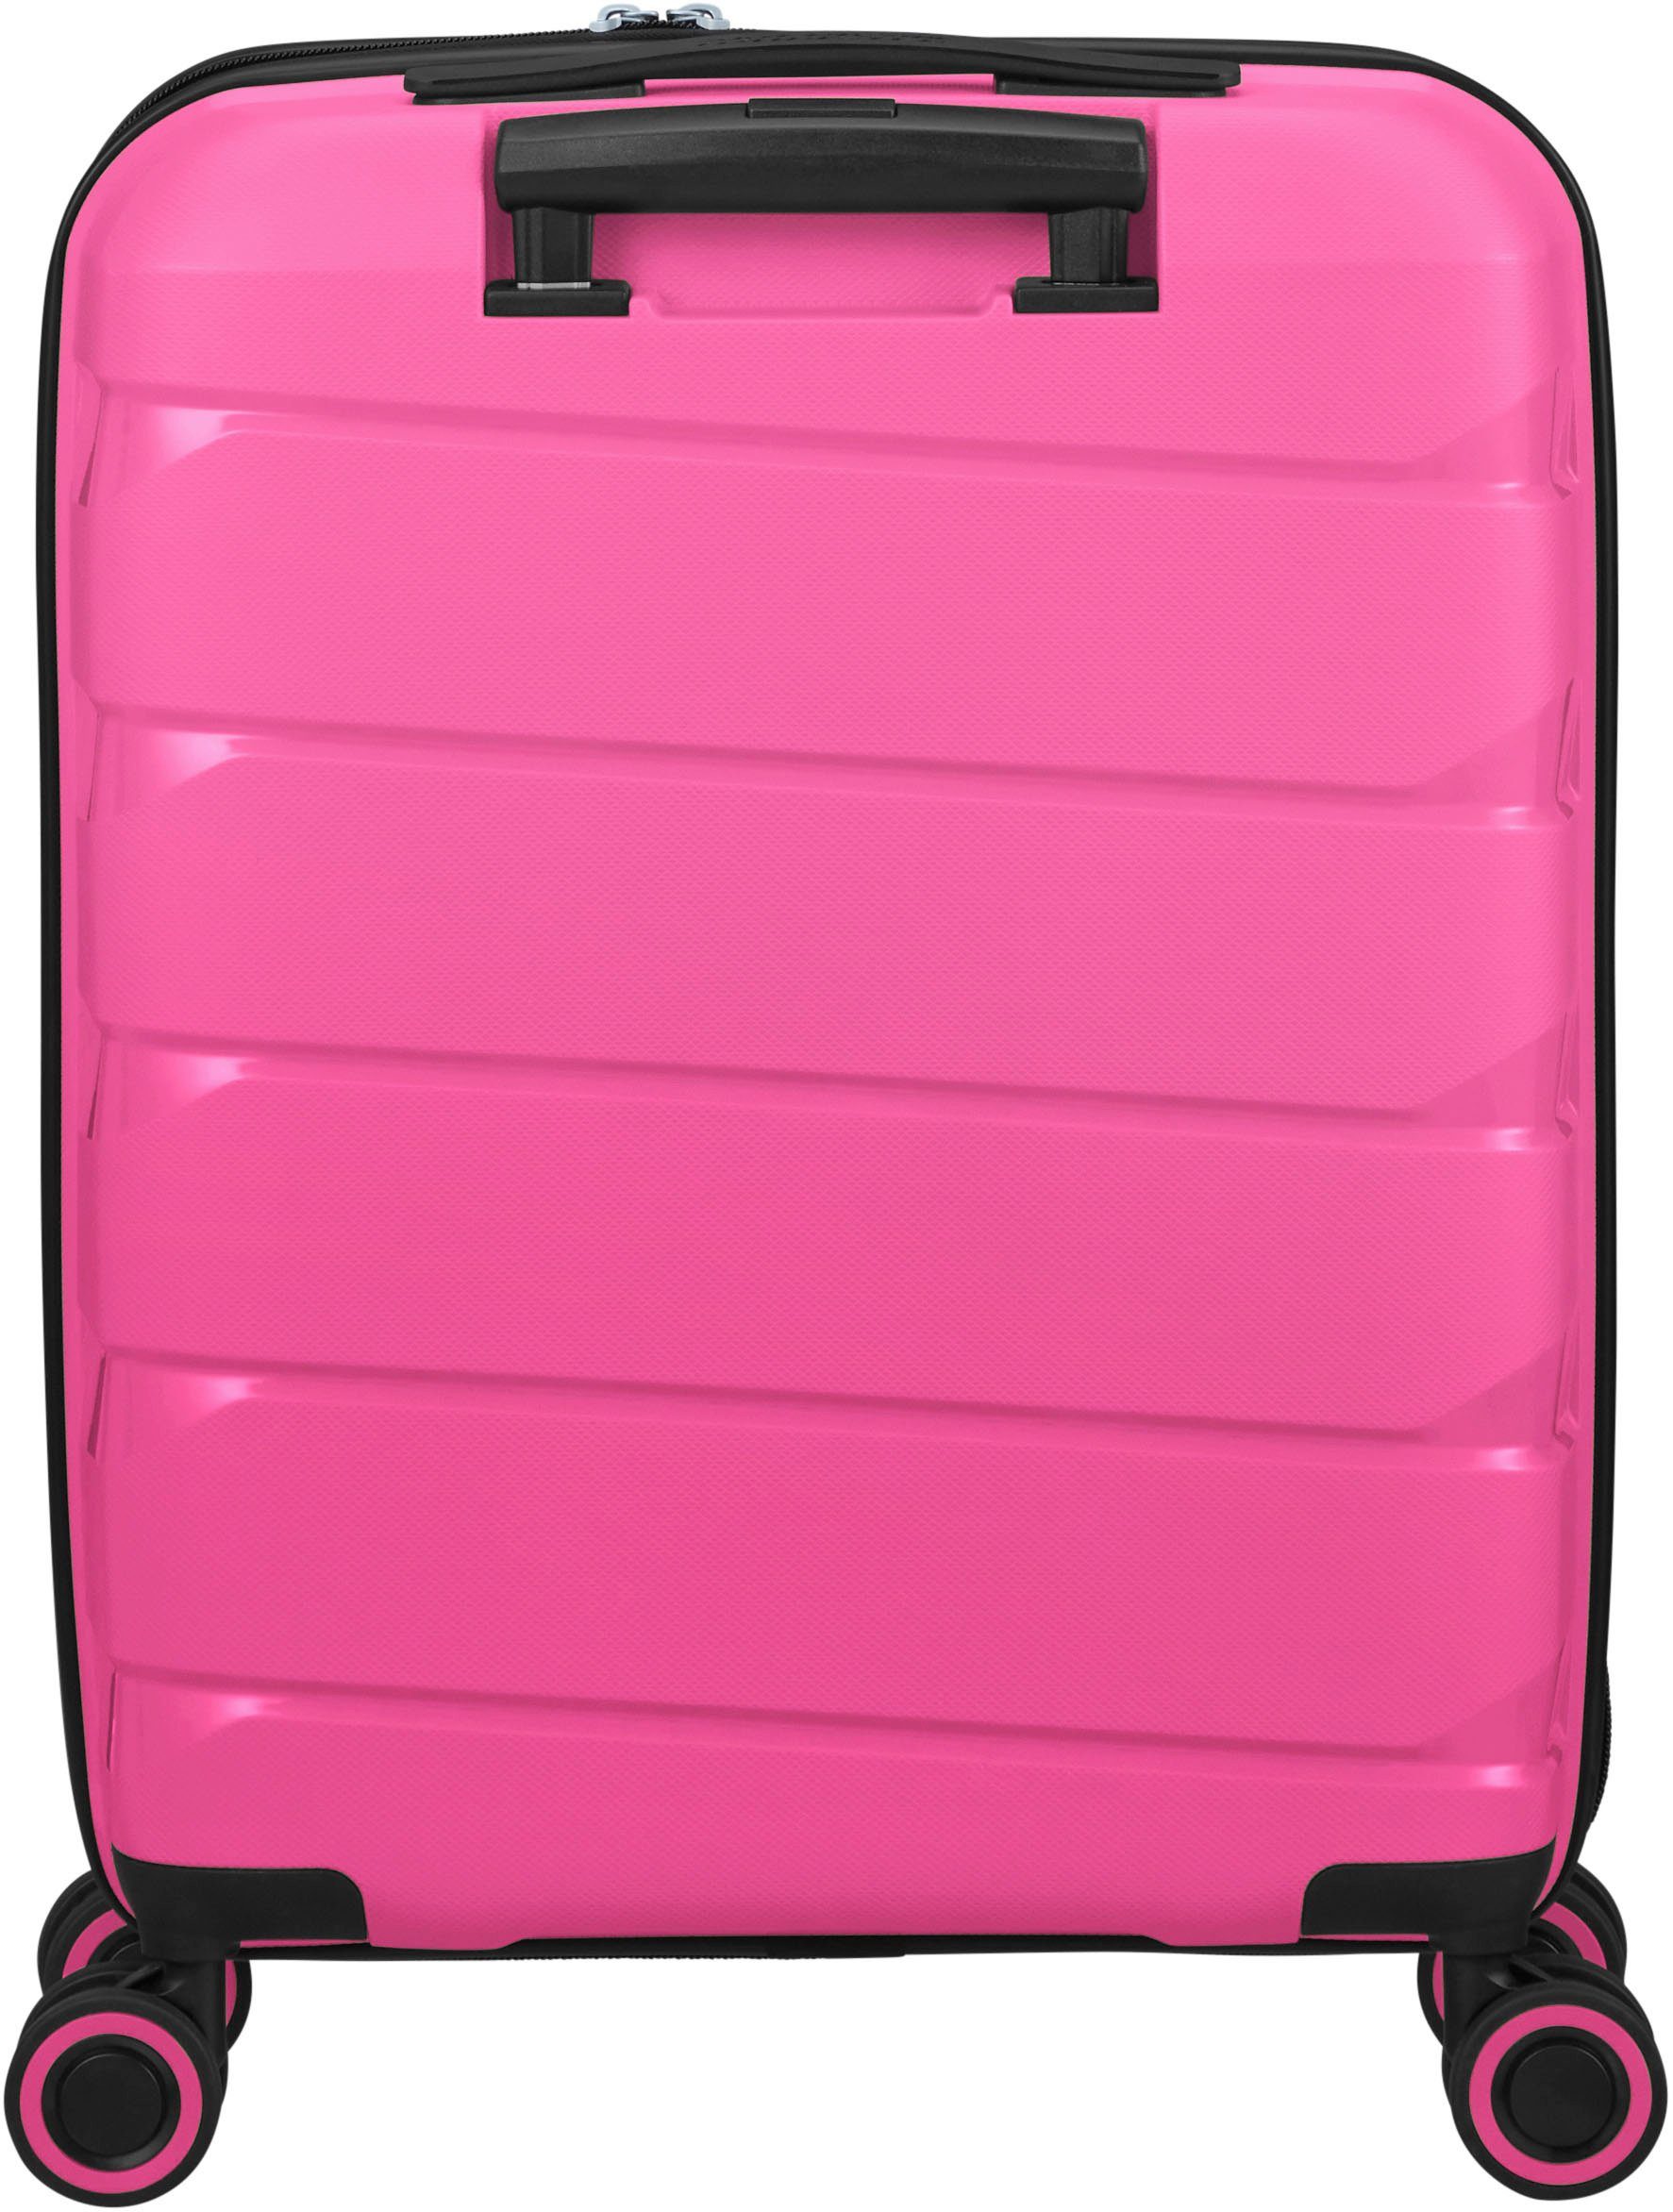 American Tourister® Hartschalen-Trolley Air Move, cm, 4 Rollen Peace 55 Pink